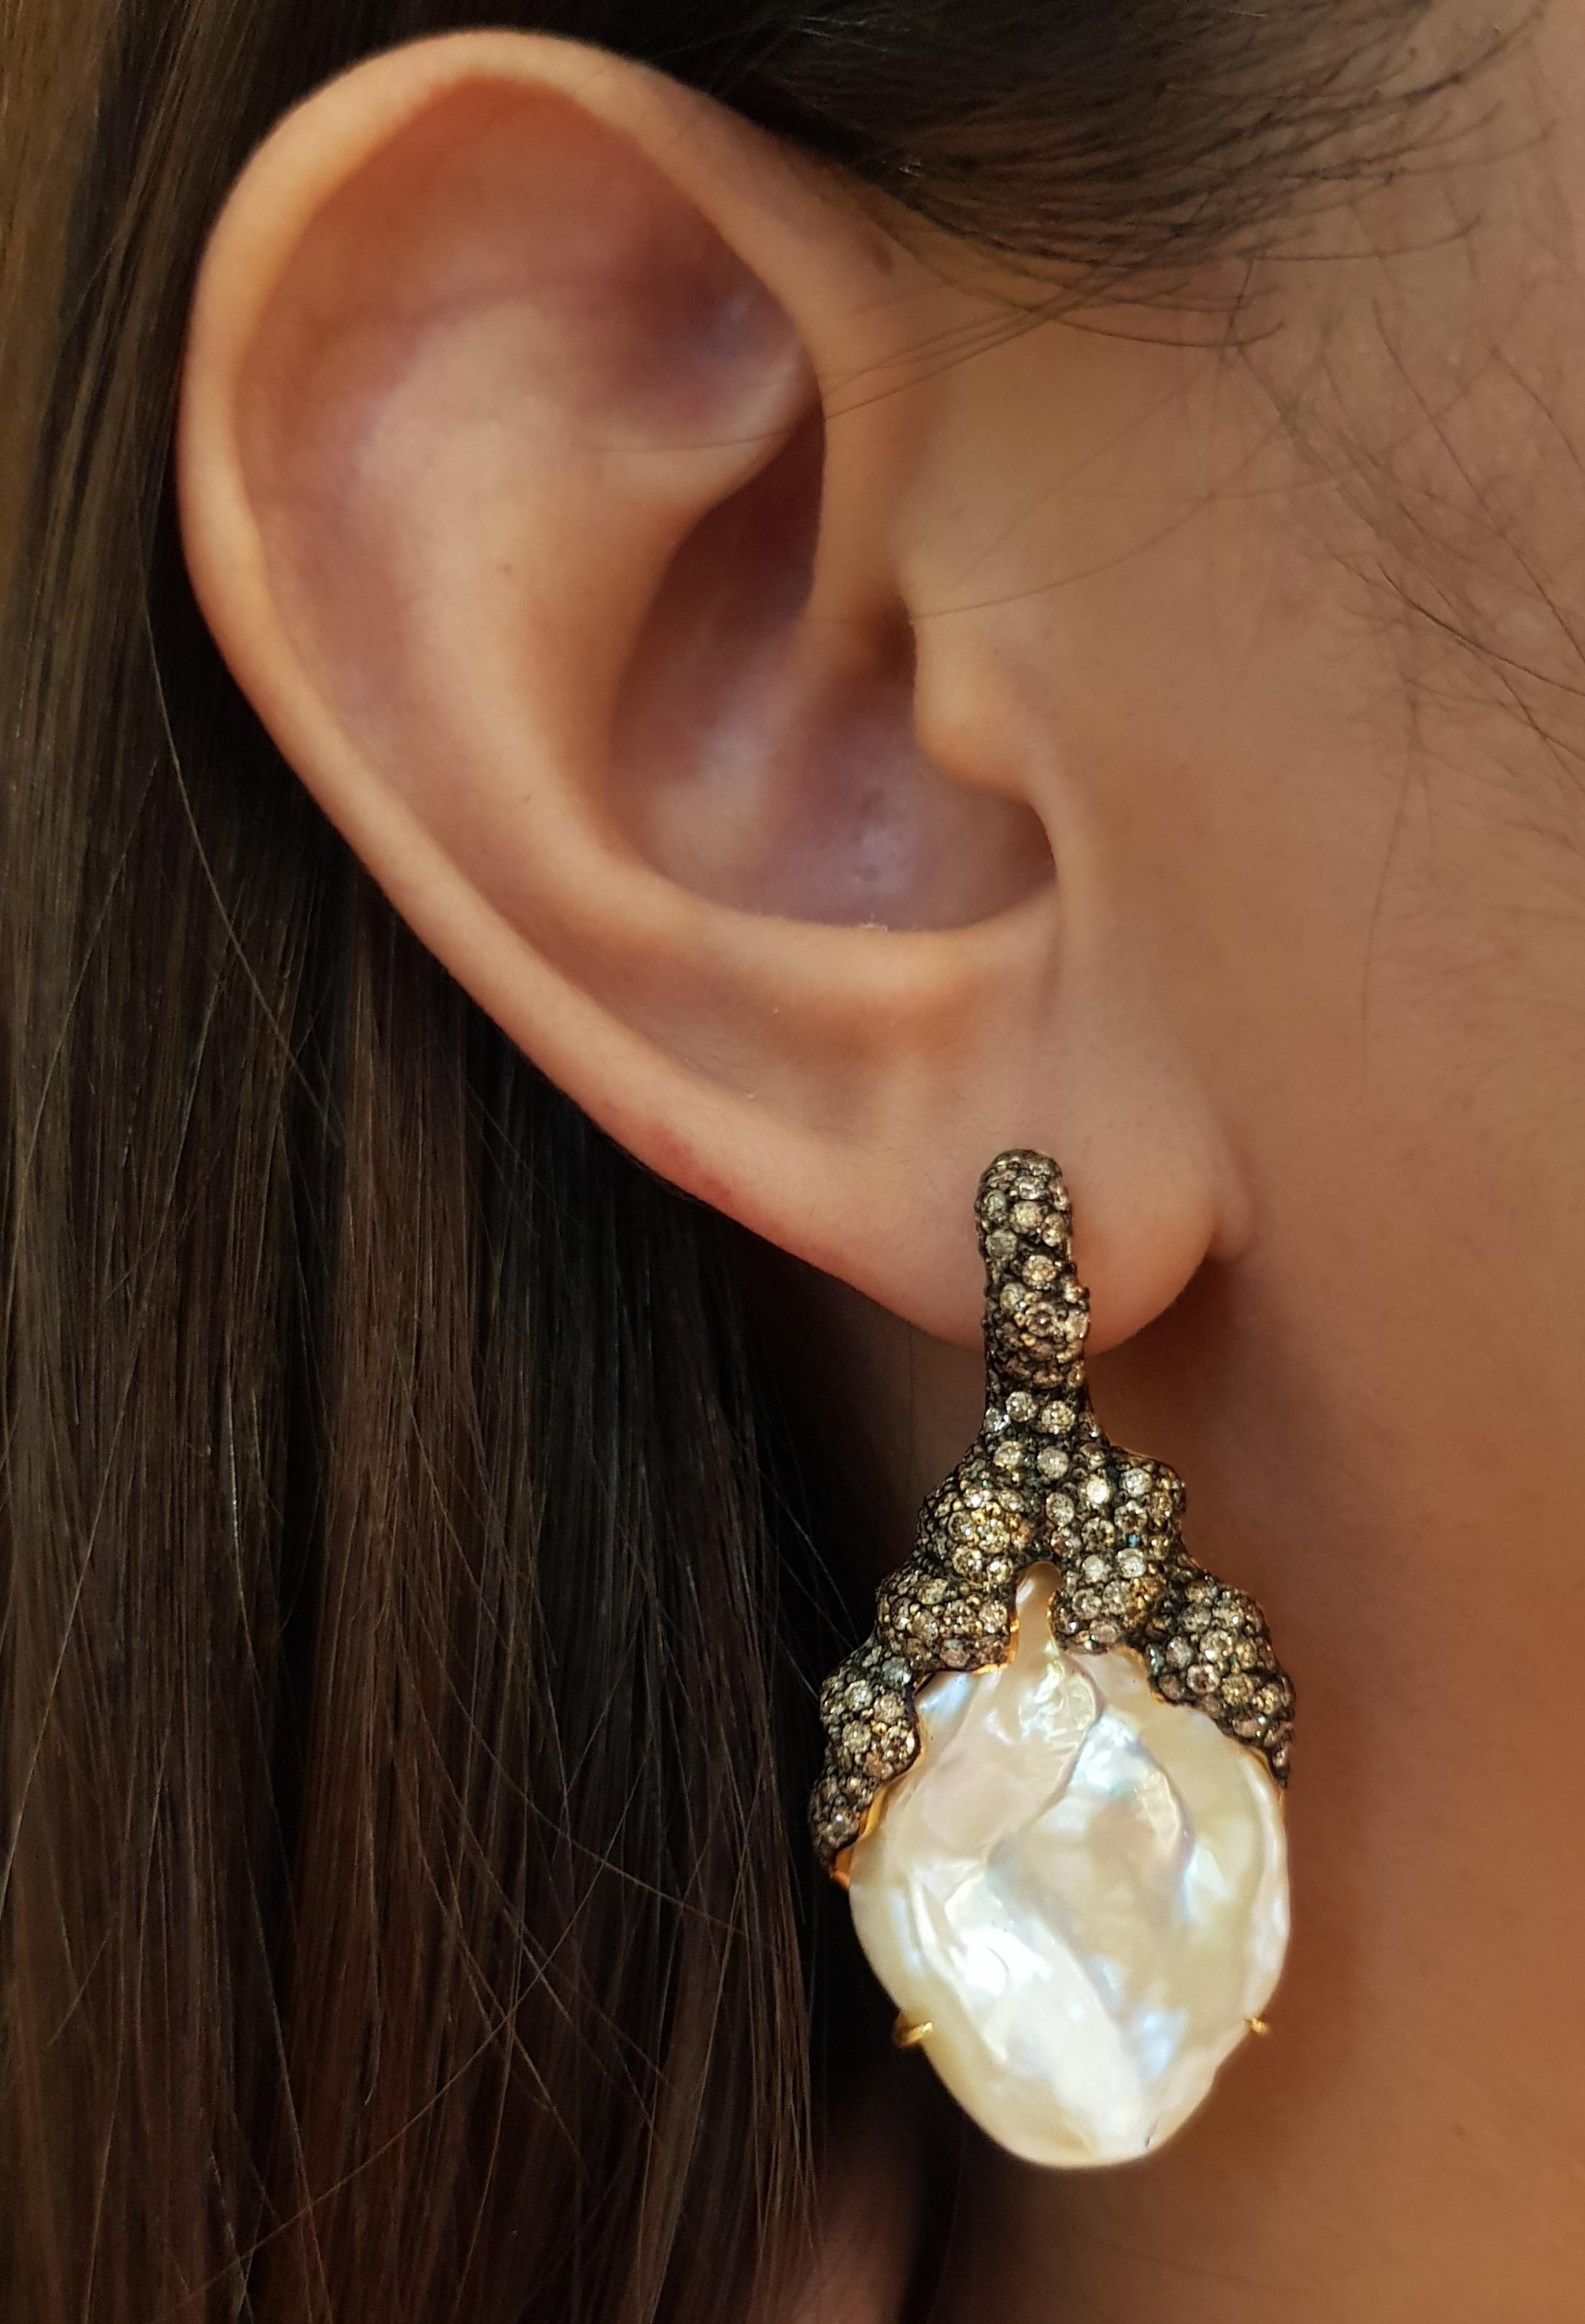 Boucles d'oreilles en or 18 carats avec perles et diamants bruns 3.02 carats

Largeur :  2.1 cm 
Longueur :  4.3  cm
Poids total : 22,97 grammes

FONDÉE PAR UN COUPLE PRIMÉ, NUTTAPON (KENNY) & SHAR-LINN, KAVANT & SHARART EST UNE MARQUE DE JOAILLERIE